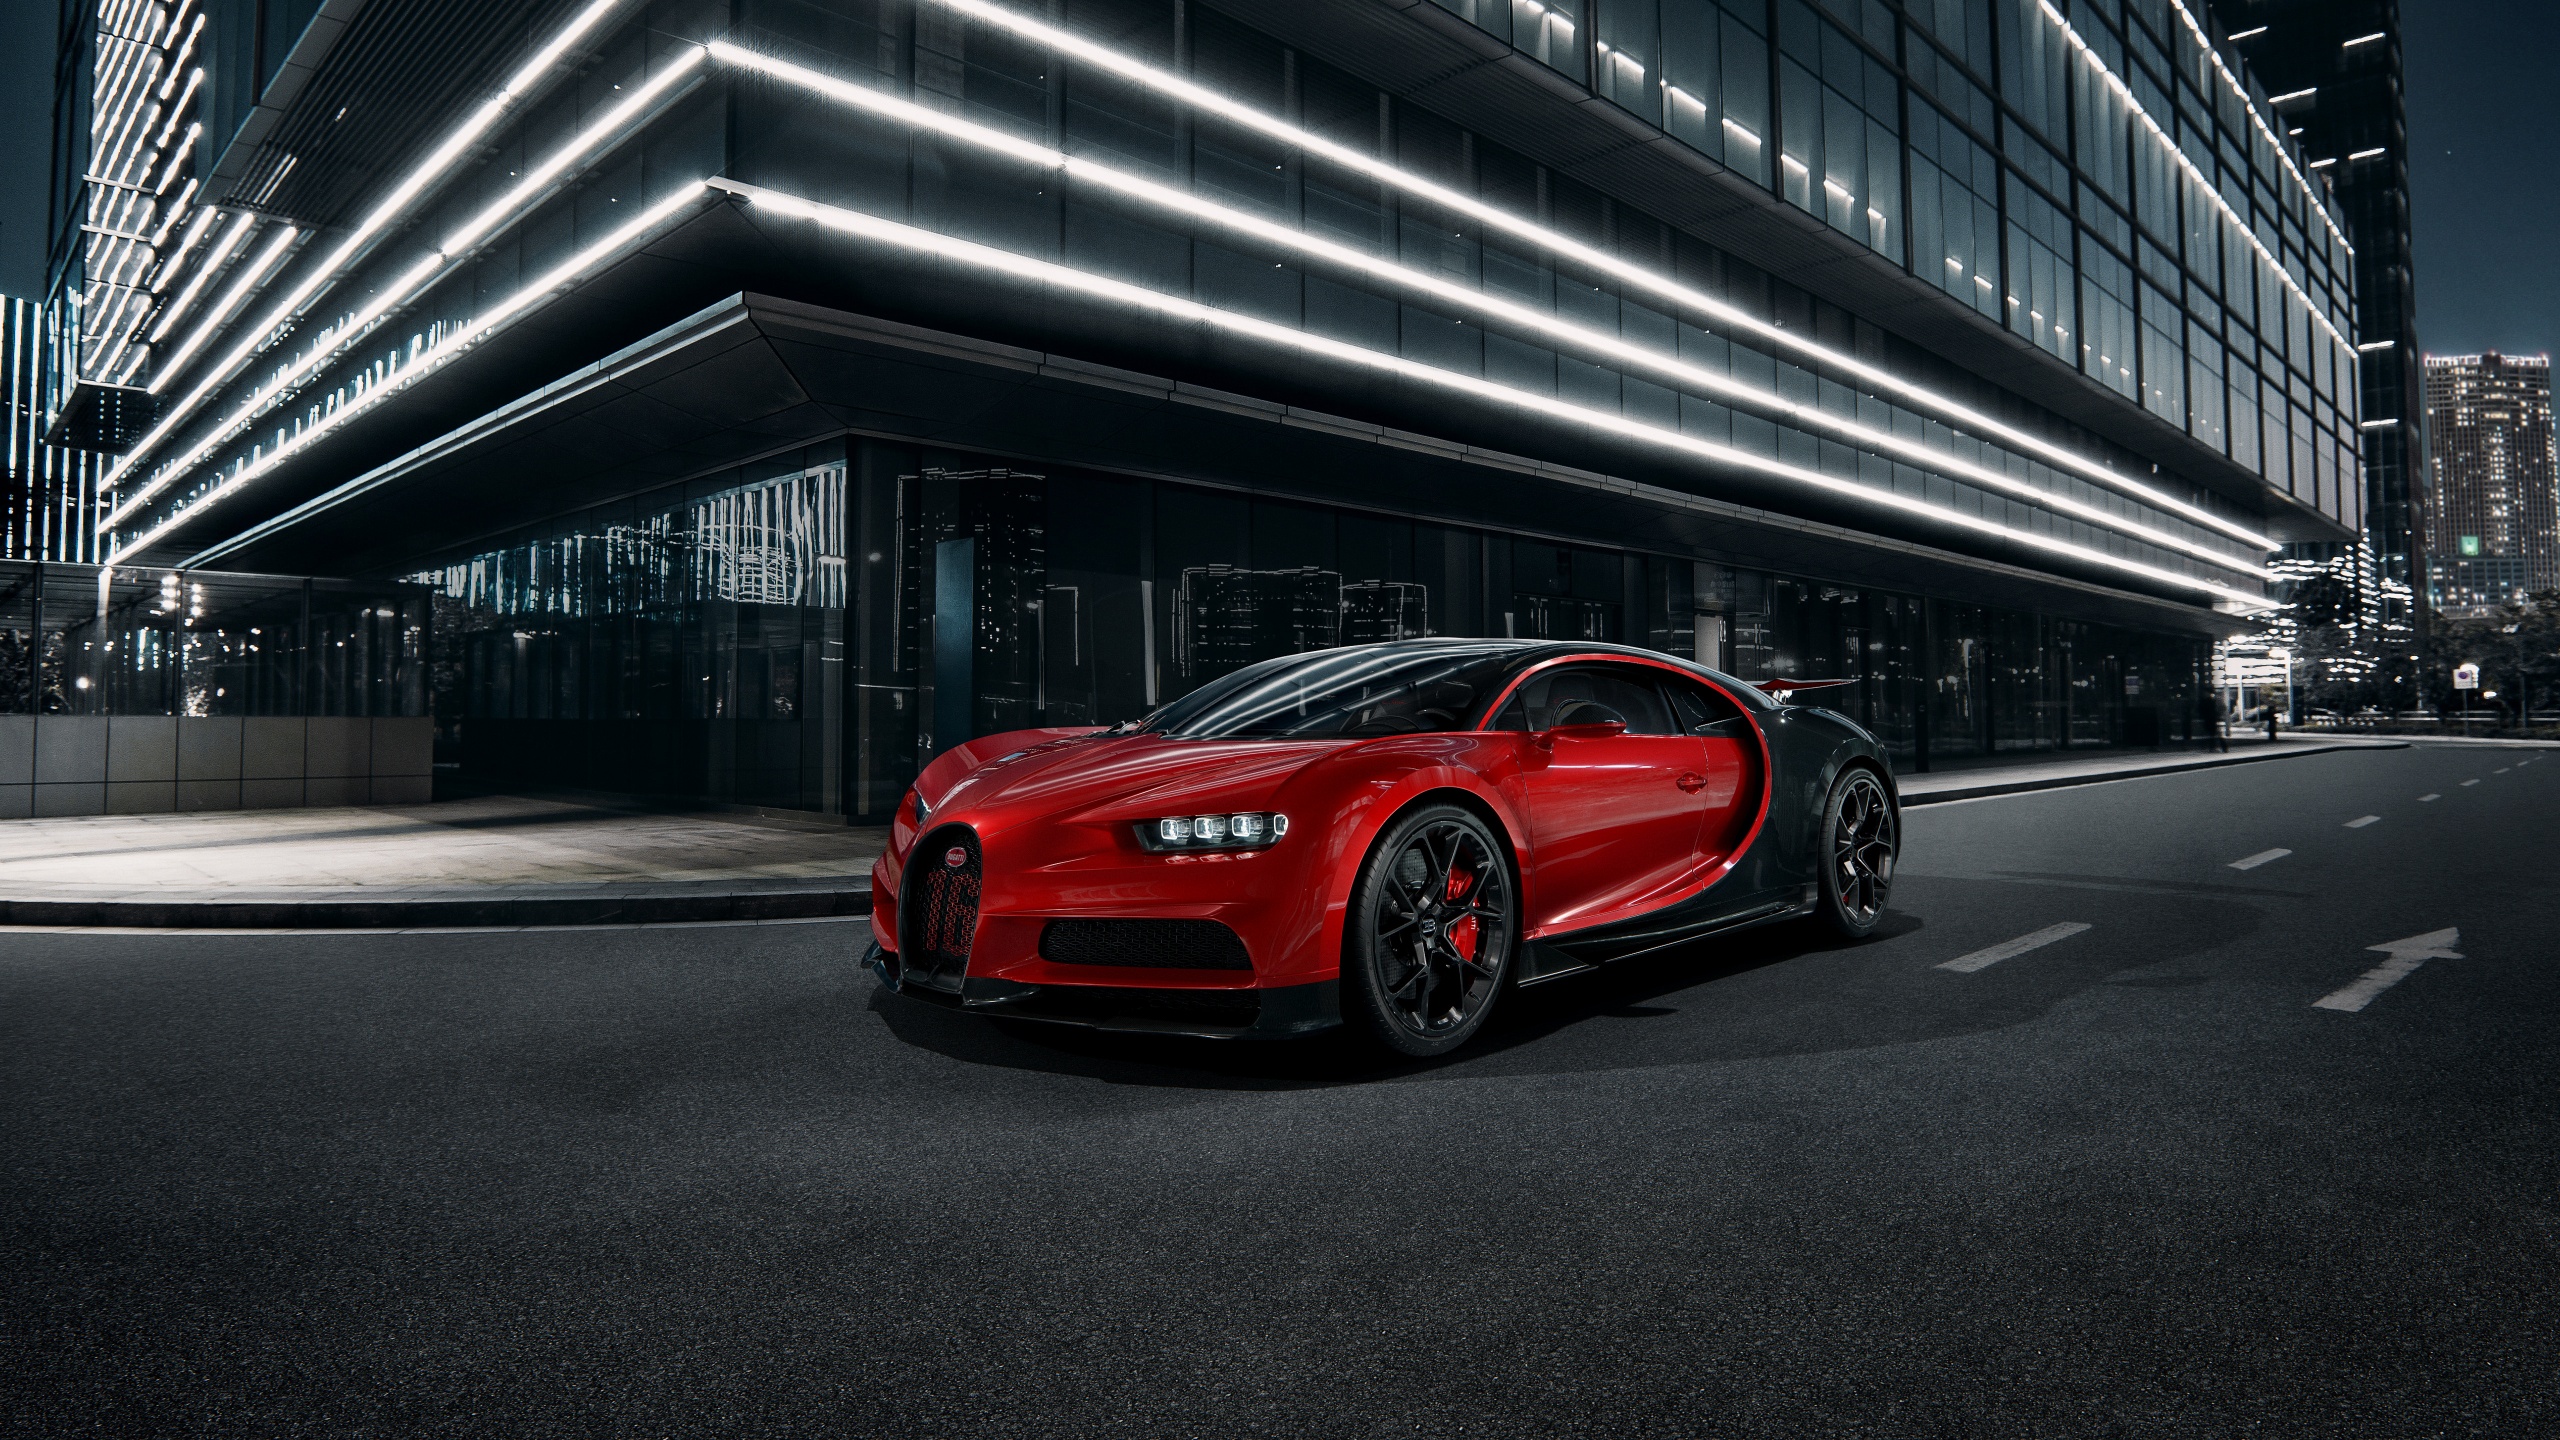 Hình nền Bugatti Chiron Sport 4K sẽ khiến bạn cảm thấy như một chuyên gia đua xe. Soi sáng bóng loáng của xe, hình dung về hiệu suất đua của nó và những khả năng đưa bạn nhanh chóng tới mọi địa điểm. Nếu bạn là người đam mê đua xe, hình ảnh này sẽ khiến bạn tràn đầy năng lượng.